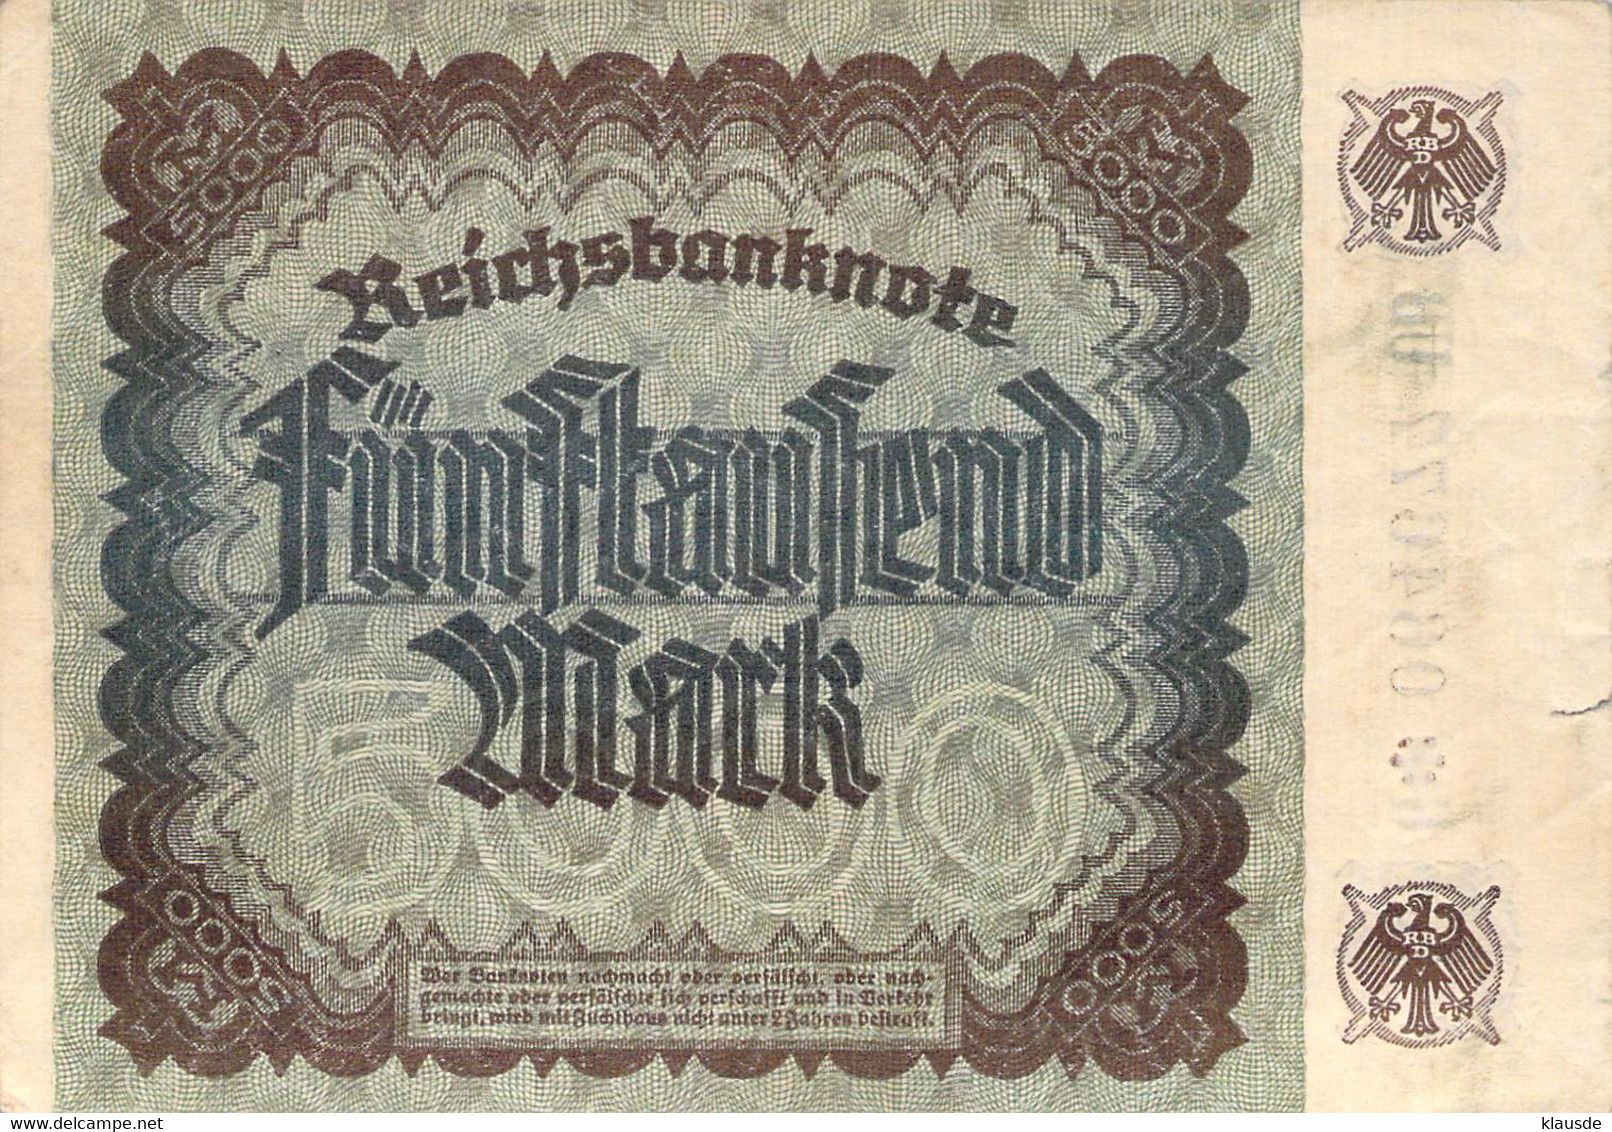 5.000 Mark 1922 Deutsche Reichsbanknote VG/G (IV) - 5.000 Mark